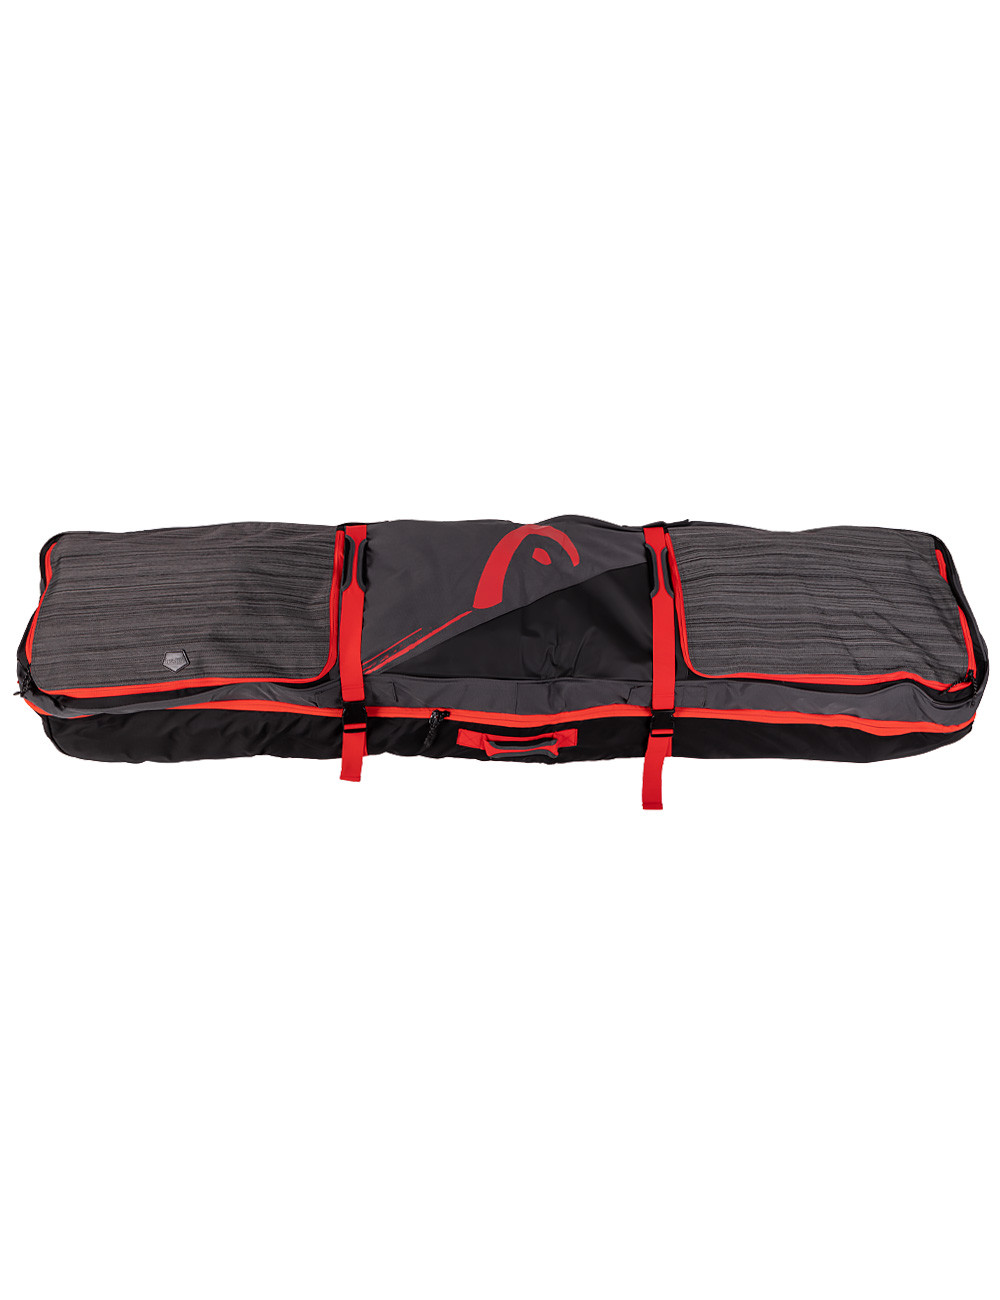 Pokrowiec snowboardowy Head Travel Boardbag z kółkami